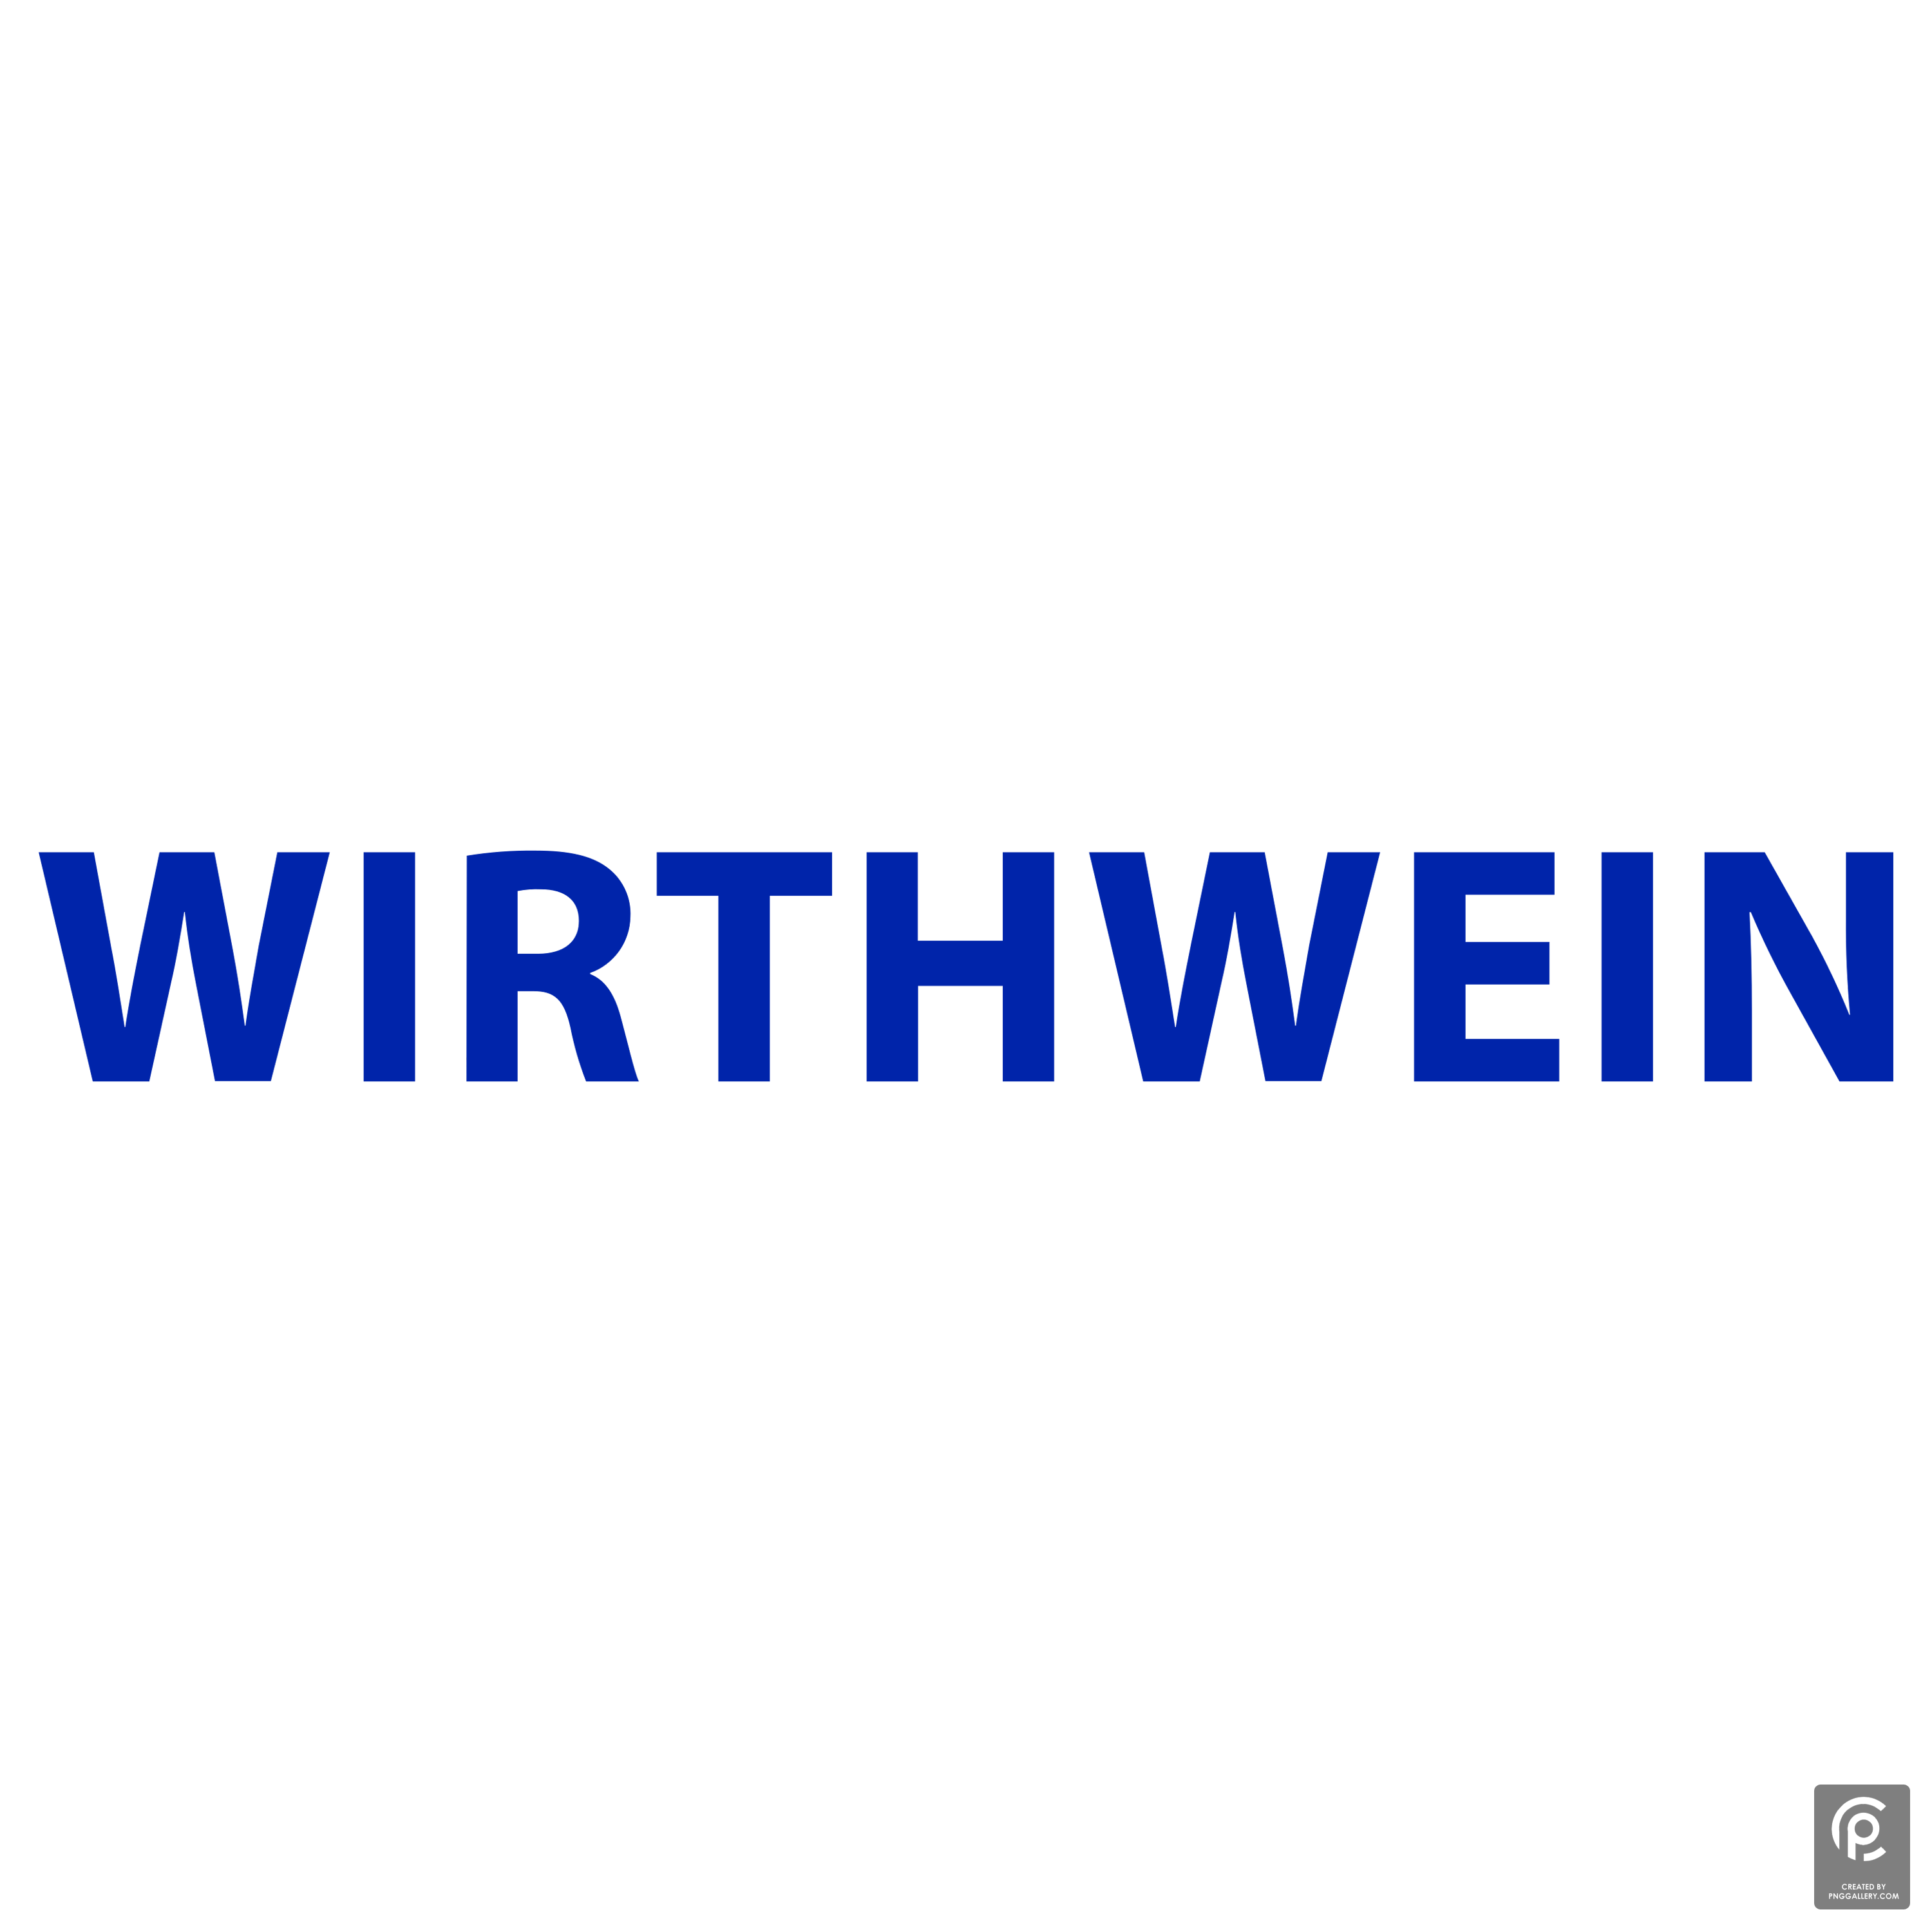 Wirthwein Logo Transparent Photo